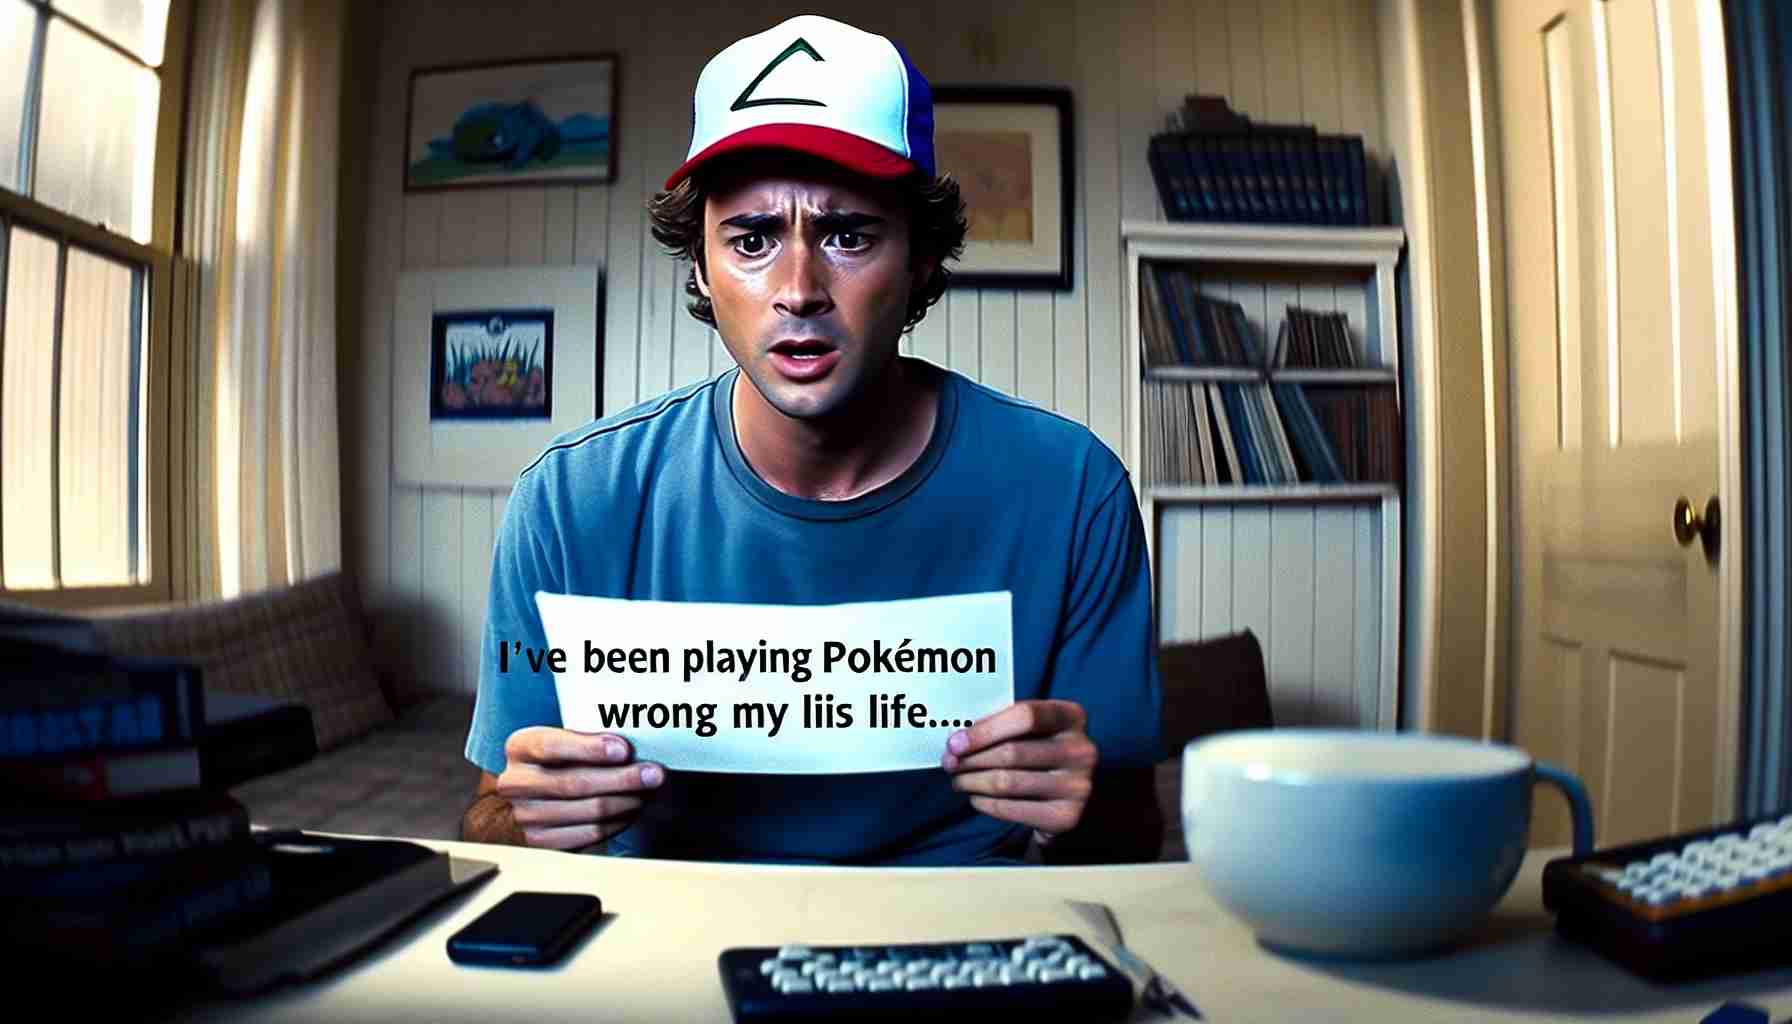 Ce joueur réalise après 14 ans qu'il jouait mal à Pokémon à cause d'une simple erreur de compréhension